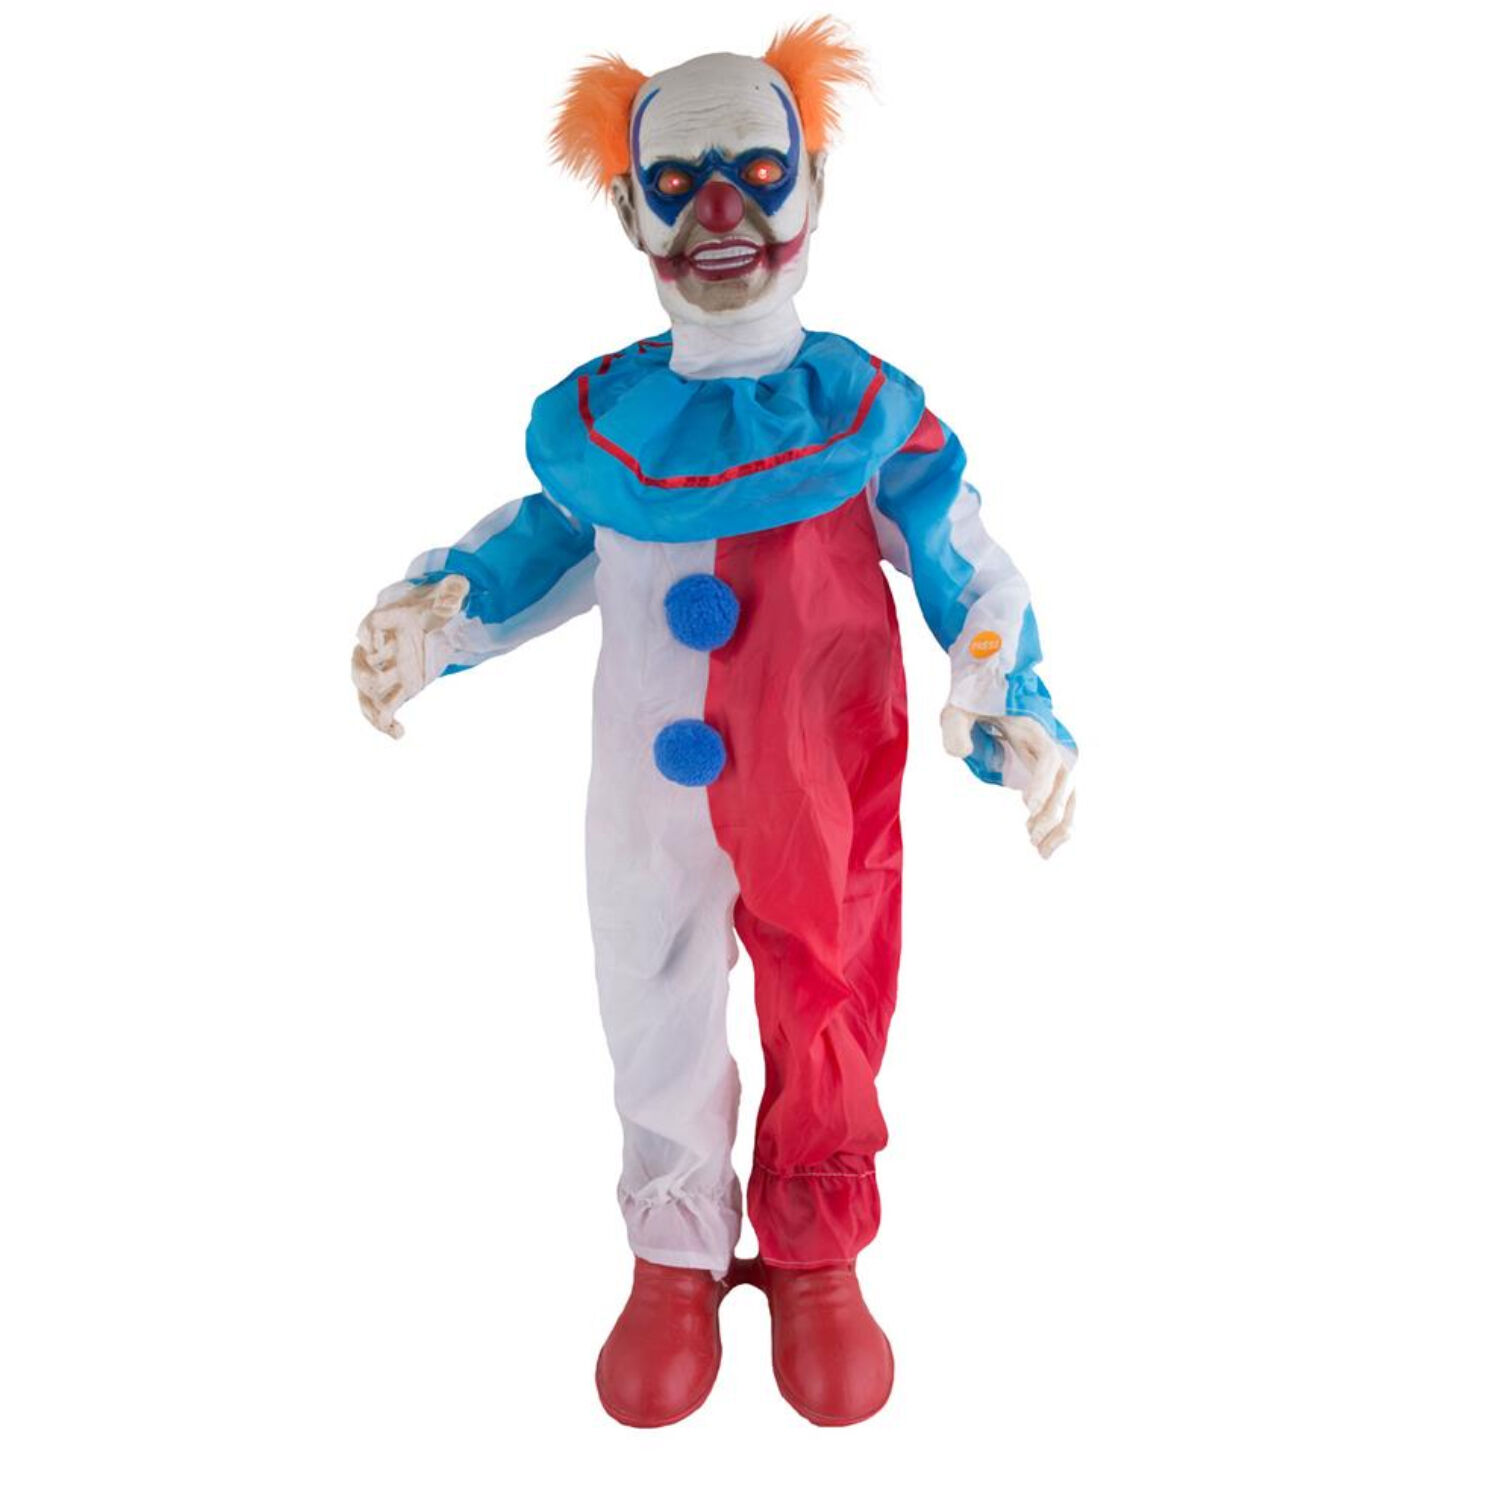 NEU Gro-Deko Grusel-Clown mit Bewegung, Licht und Sound, blau-wei-rot, 95 cm